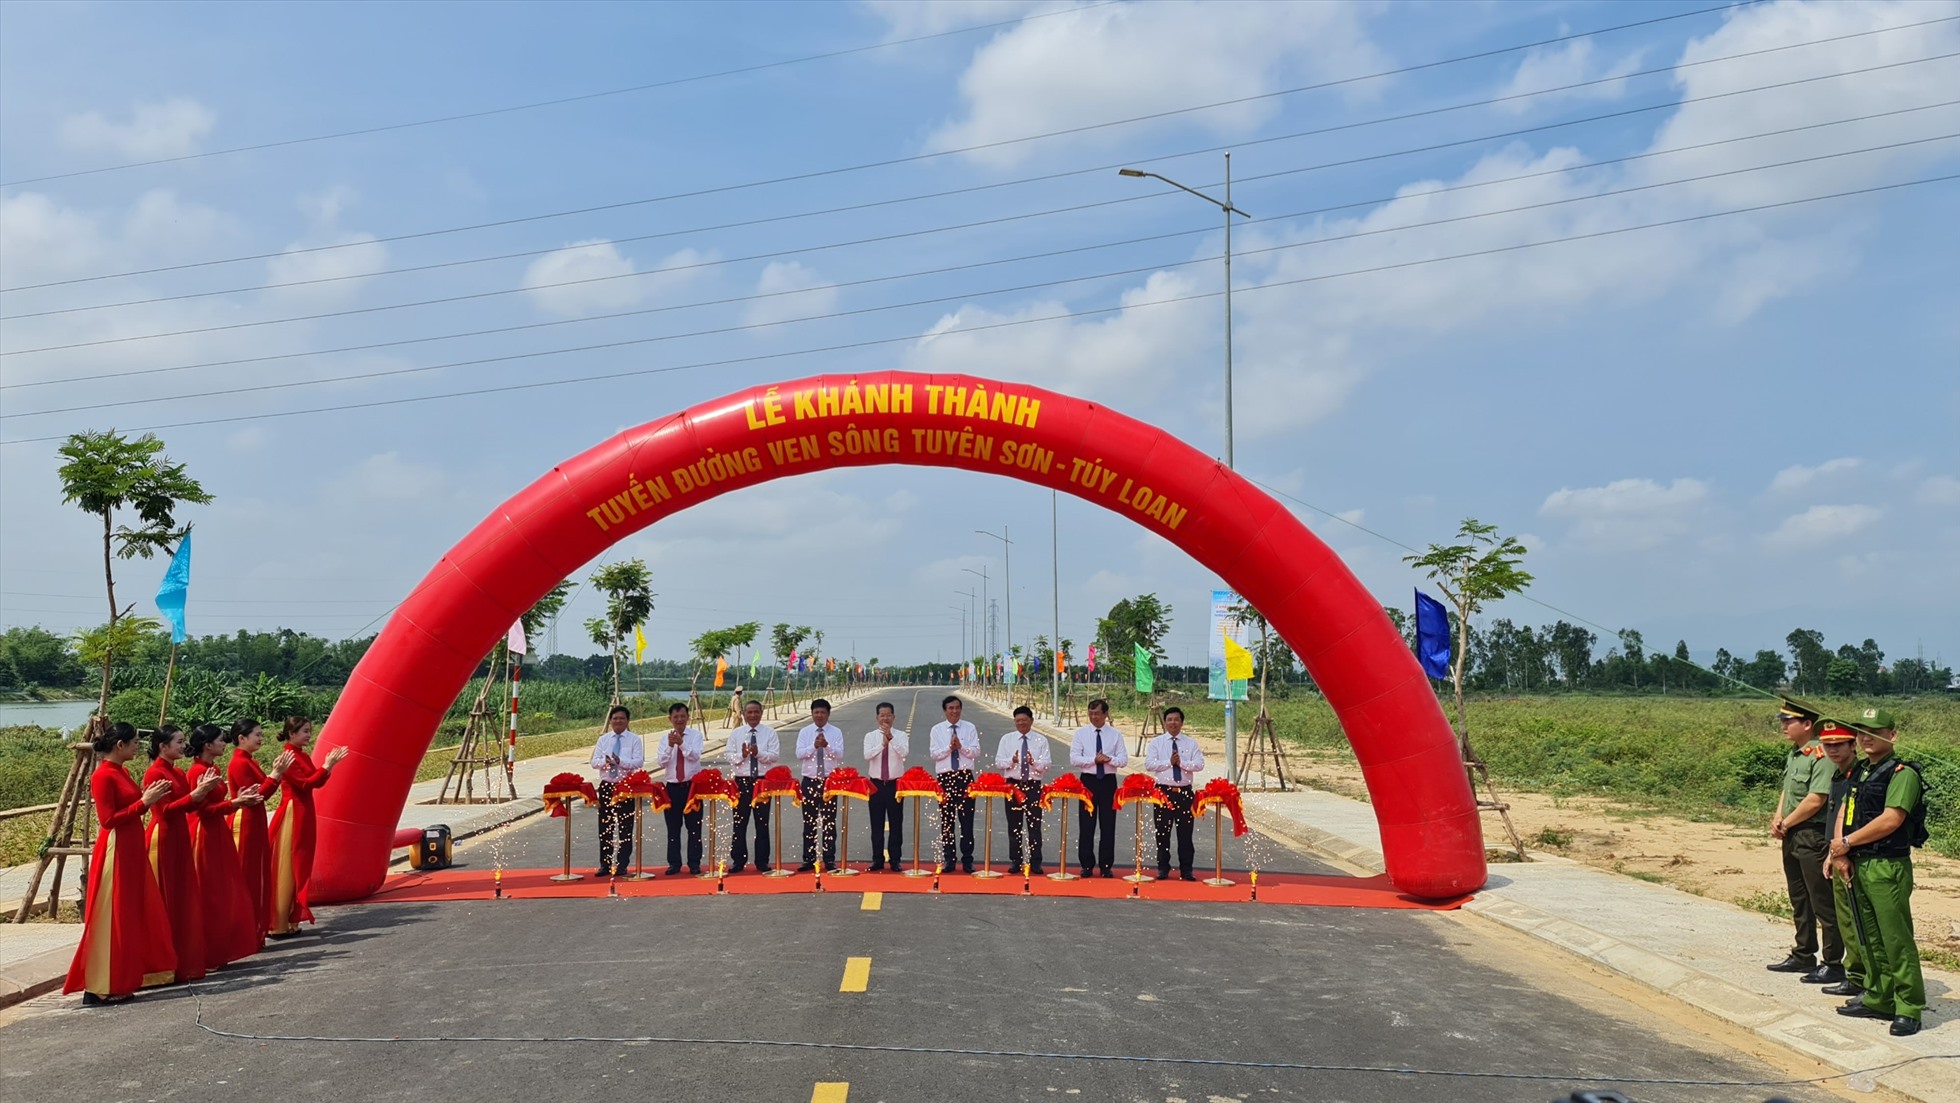 Lãnh đạo TP Đà Nẵng cắt băng khánh thành dự án Đường ven sông Tuyên Sơn - Túy  Loan. Ảnh: Văn Trực